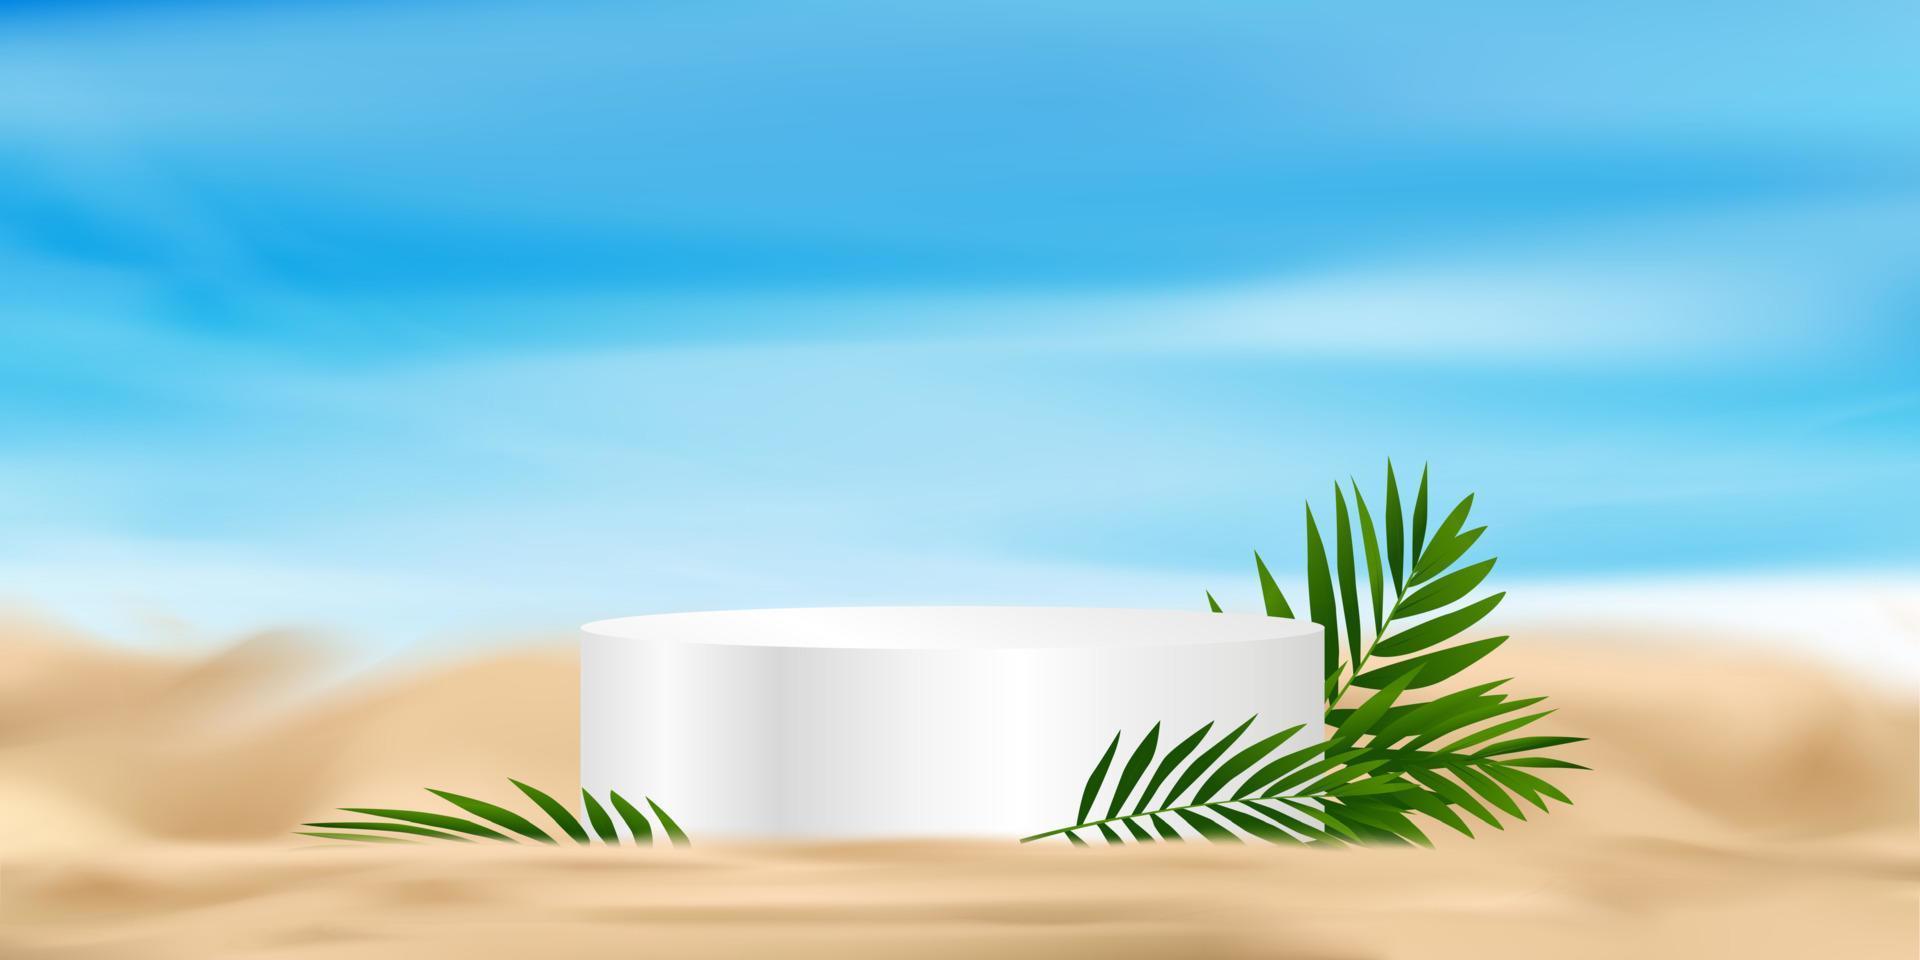 verano antecedentes 3d estar podio con Coco palma hojas en playa arena por mar apuntalar con azul cielo, natural marina tropical playa con borroso horizonte, vector fondo bandera cosmético producto monitor